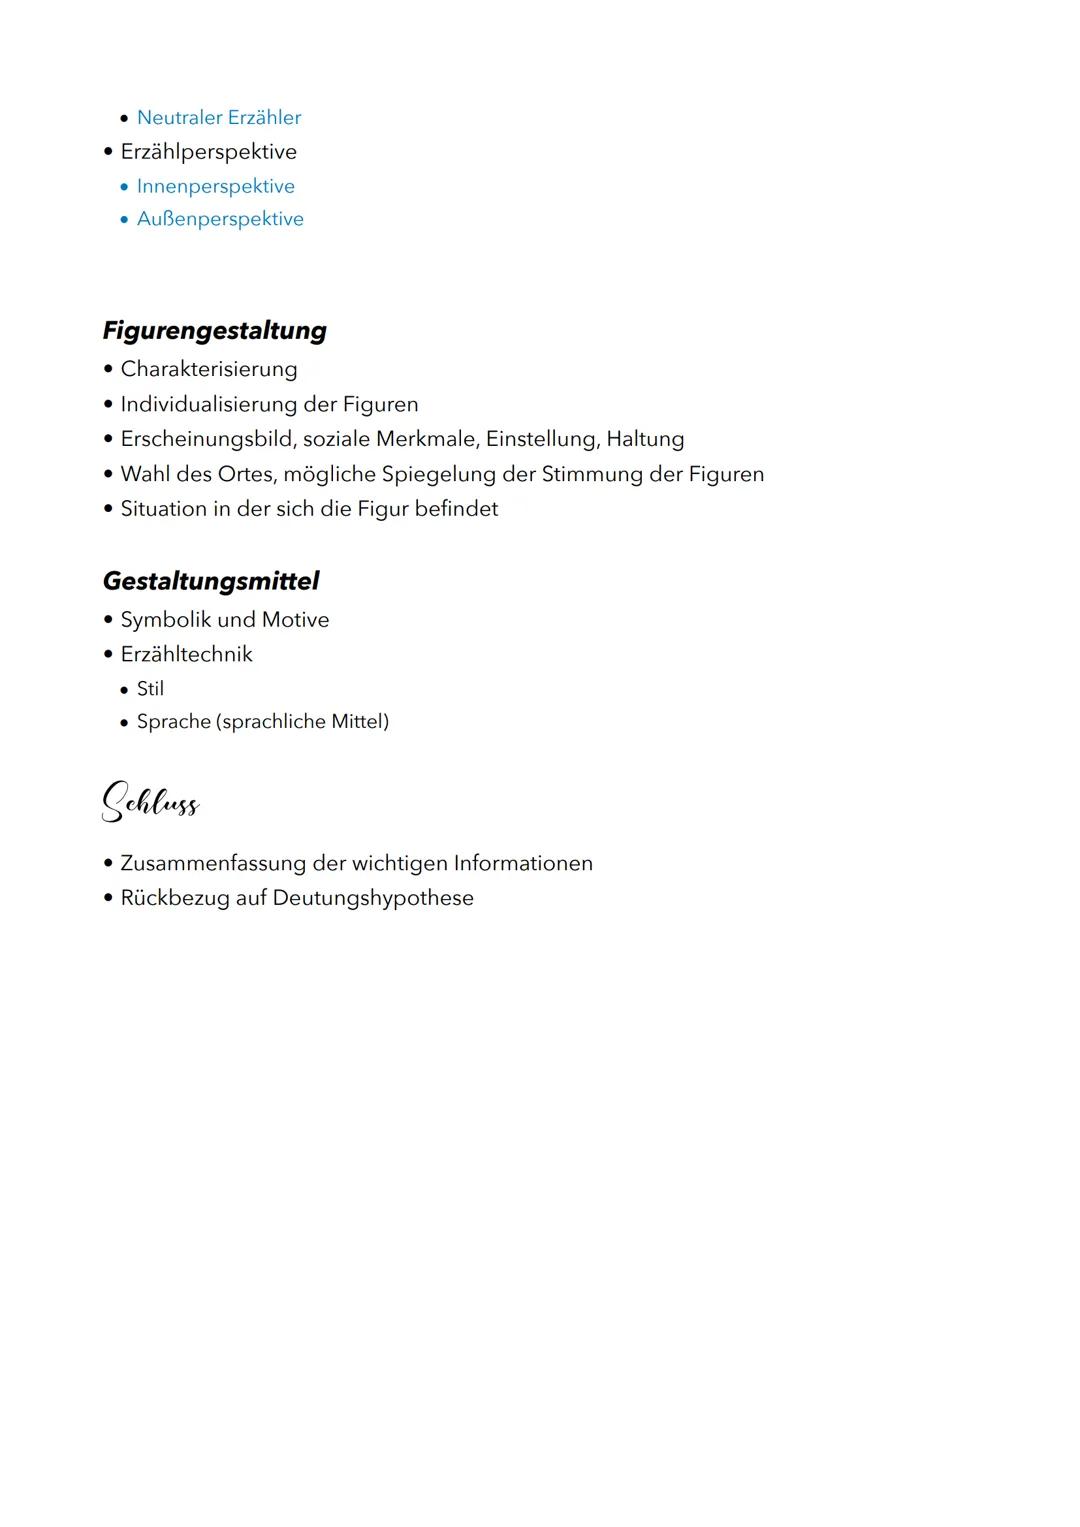 Gpikanalyse
Gurleitung
• Autor, Titel, Erscheinungsjahr, Textart, Thema, Inhalt
• Deutungshypothese
Hauptteil
Inhaltliche Erschließung
• Zus